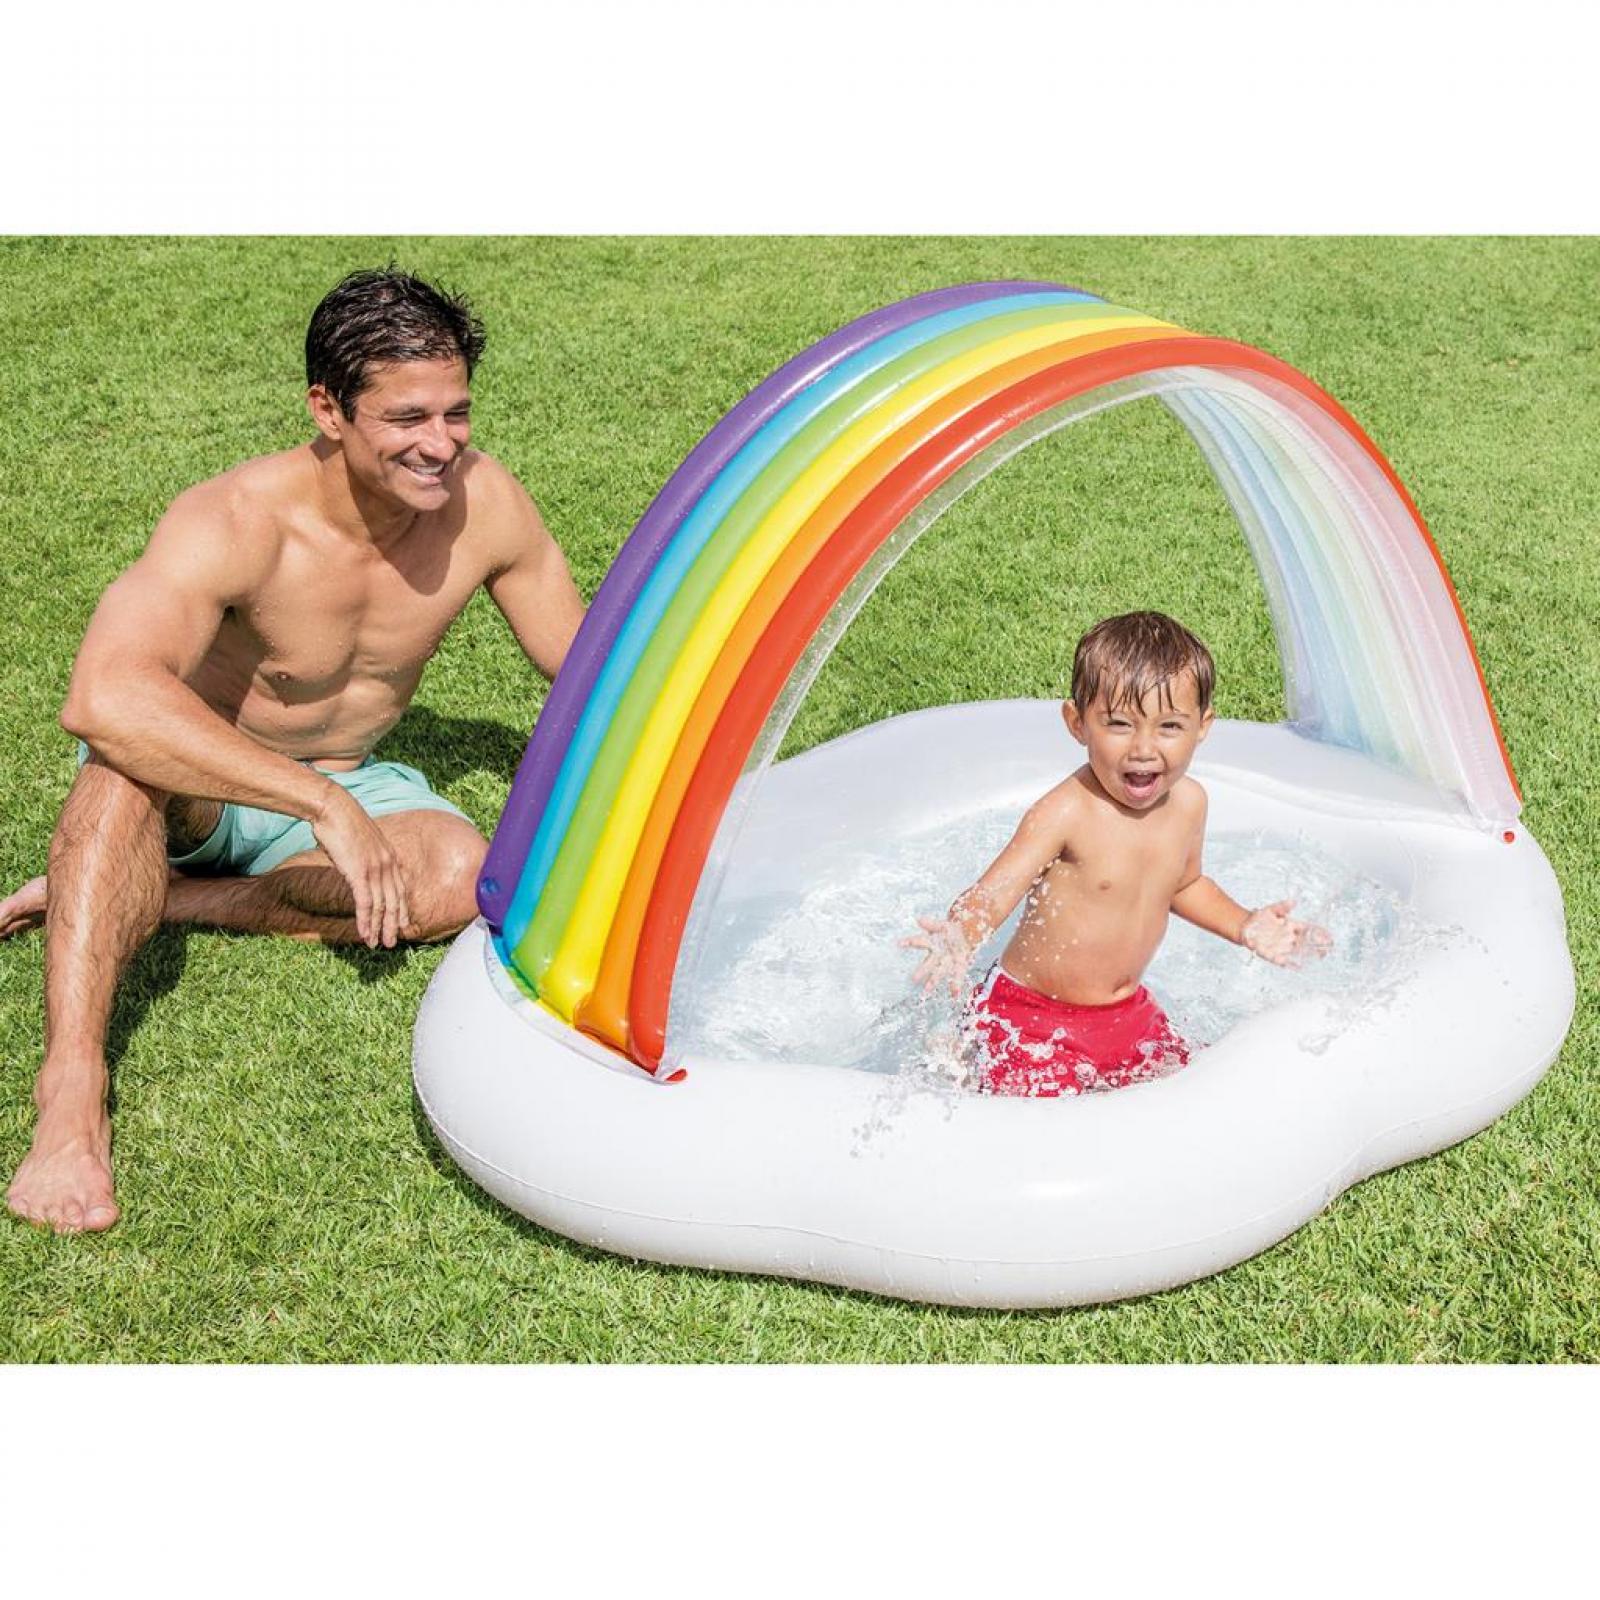  Intex Planschbecken Baby Pool Regenbogen mit